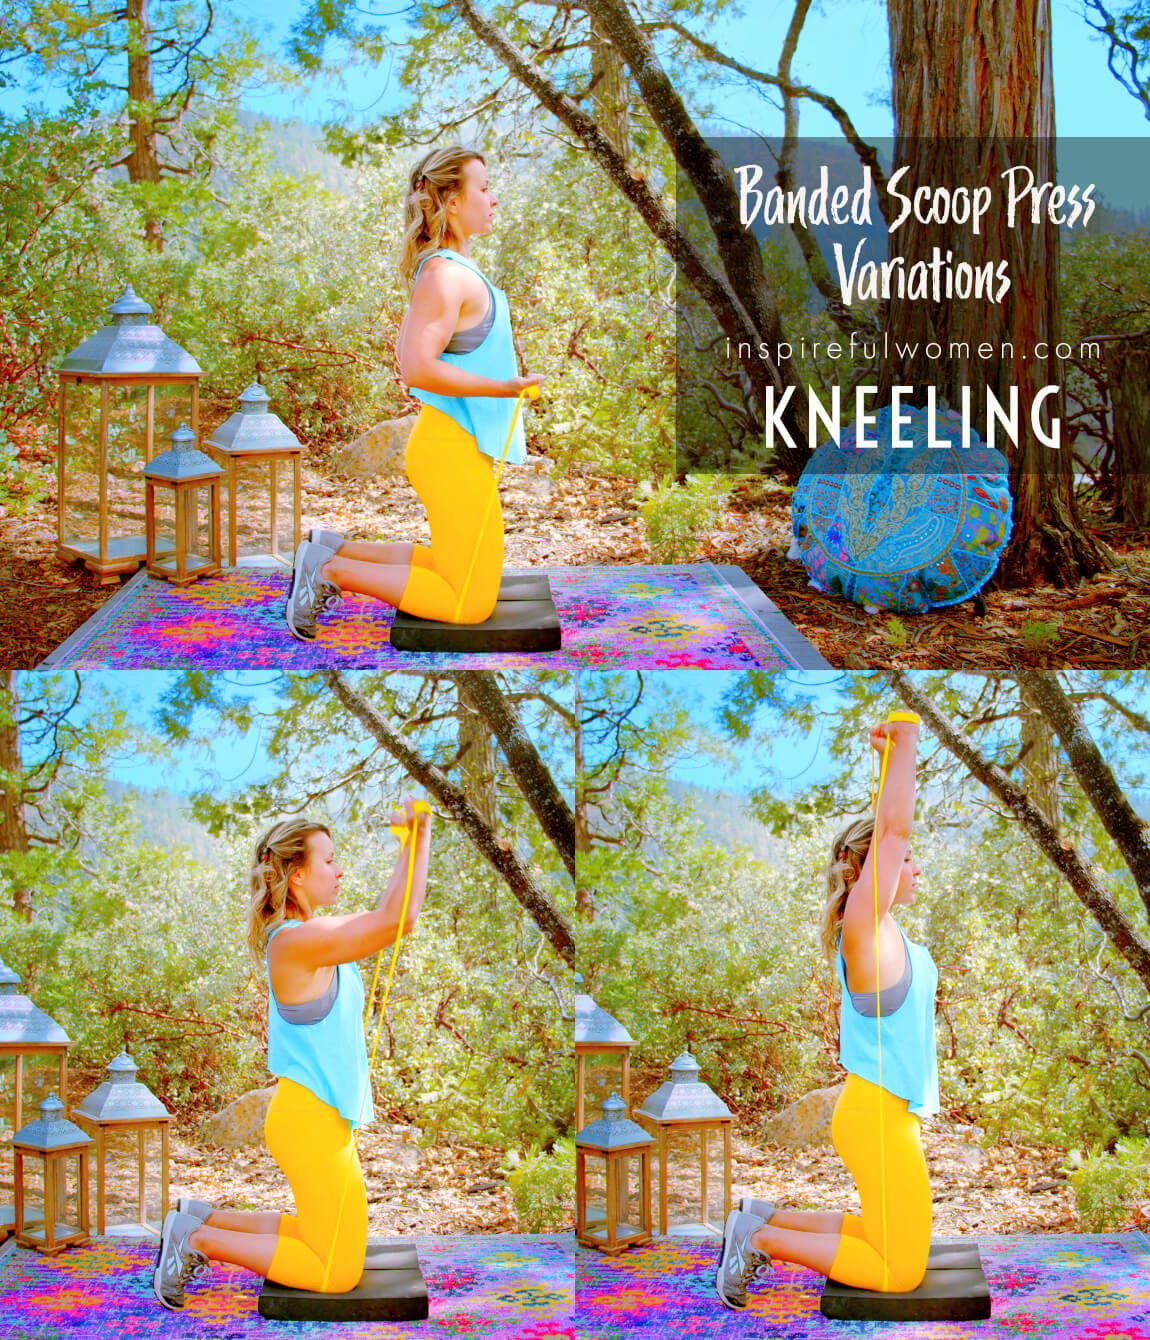 kneeling-banded-scoop-press-toned-shoulder-exercise-variation-side